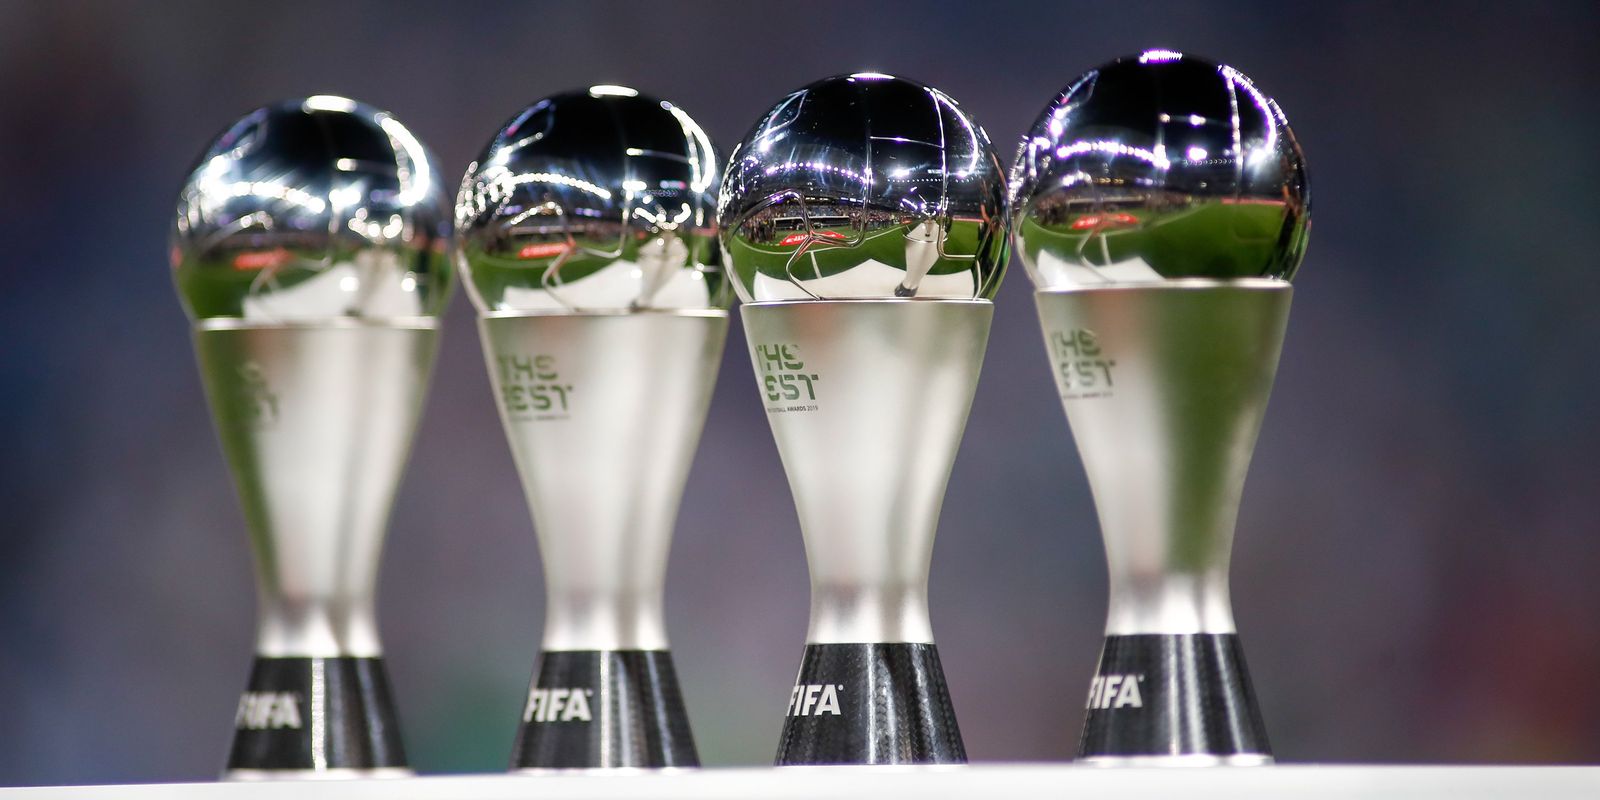 Troféus do Futebol: Prêmio FIFA de Melhor Jogador do Mundo (FIFA